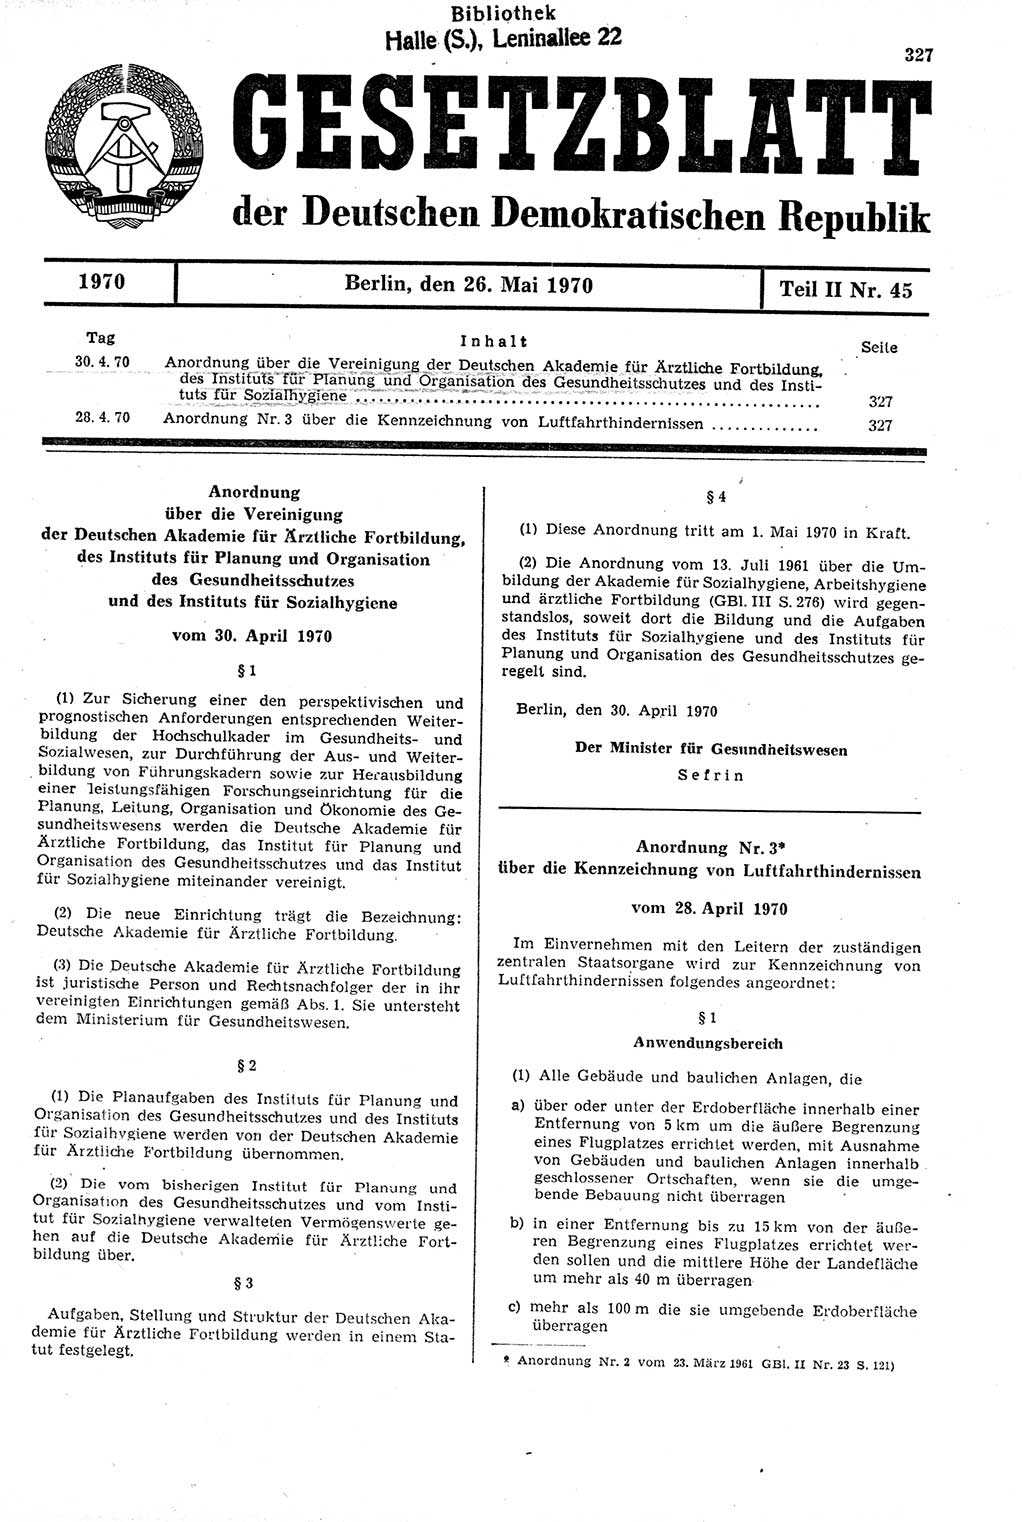 Gesetzblatt (GBl.) der Deutschen Demokratischen Republik (DDR) Teil ⅠⅠ 1970, Seite 327 (GBl. DDR ⅠⅠ 1970, S. 327)